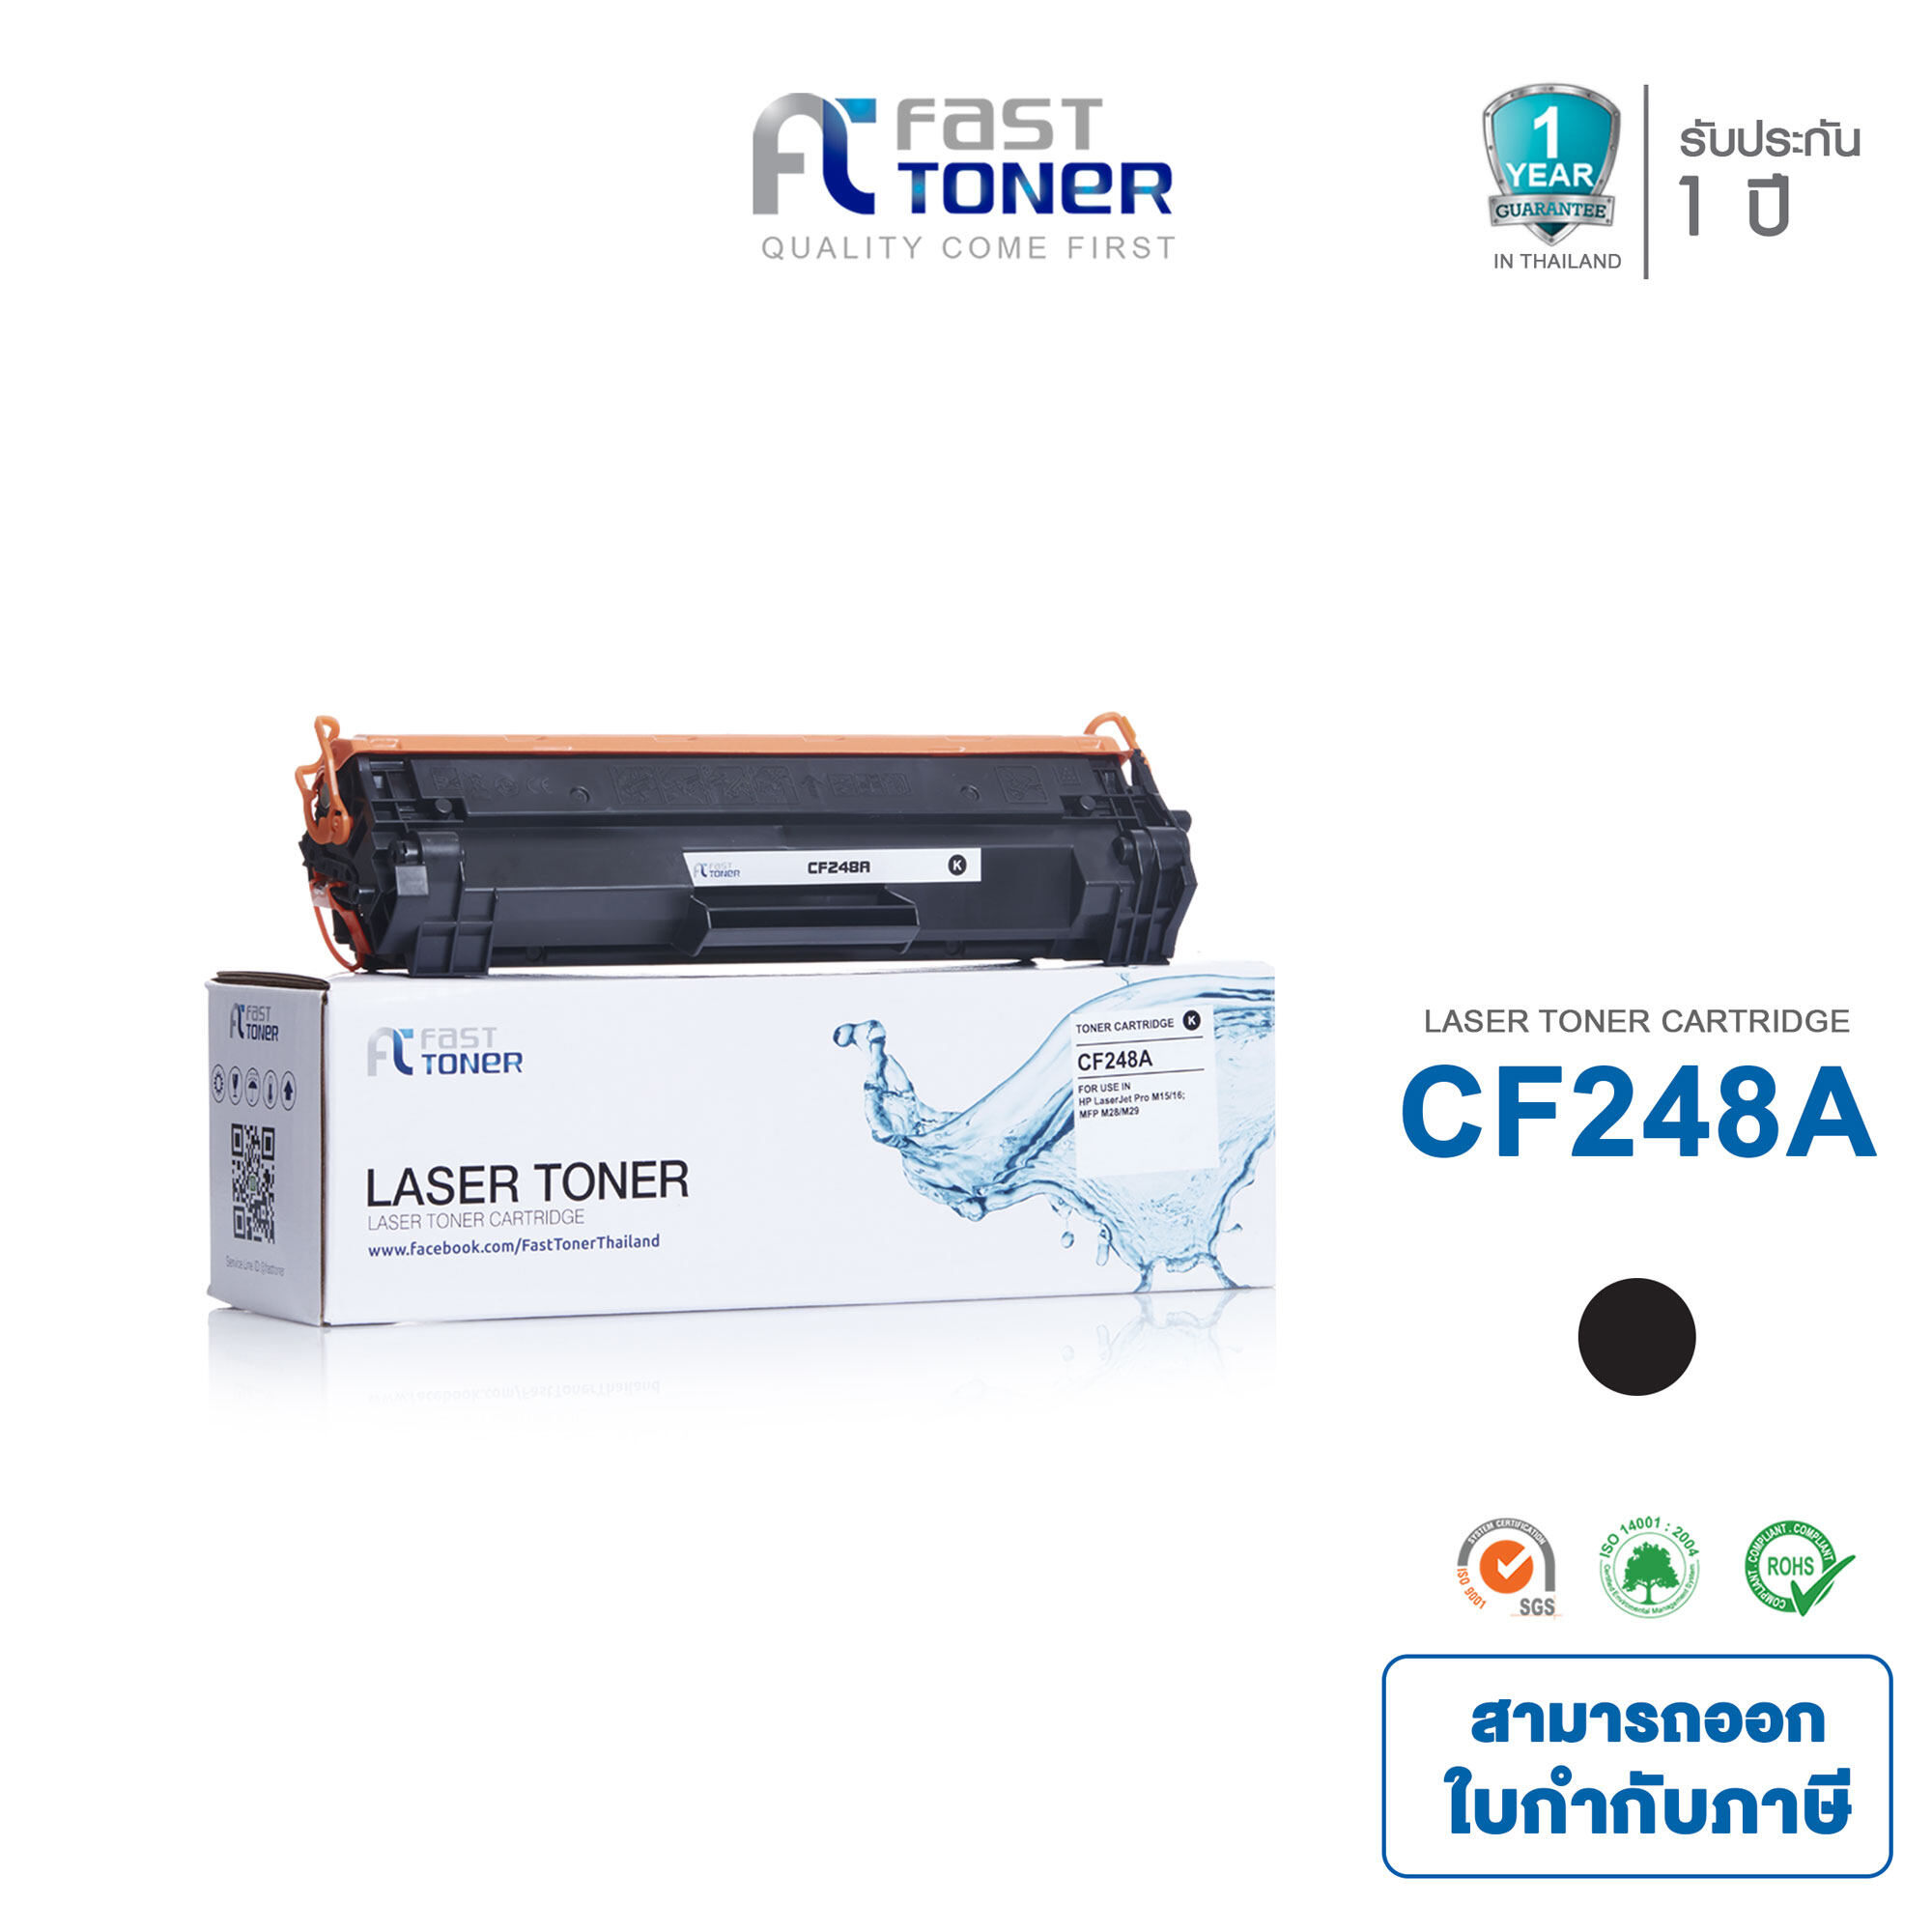 Fast Toner ใช้สำหรับรุ่น HP CF248A / M15 / M15w / M28a / M28w / M29a / M29w / M31 / ตลับหมึกเลเซอร์เทียบเท่า สีดำ